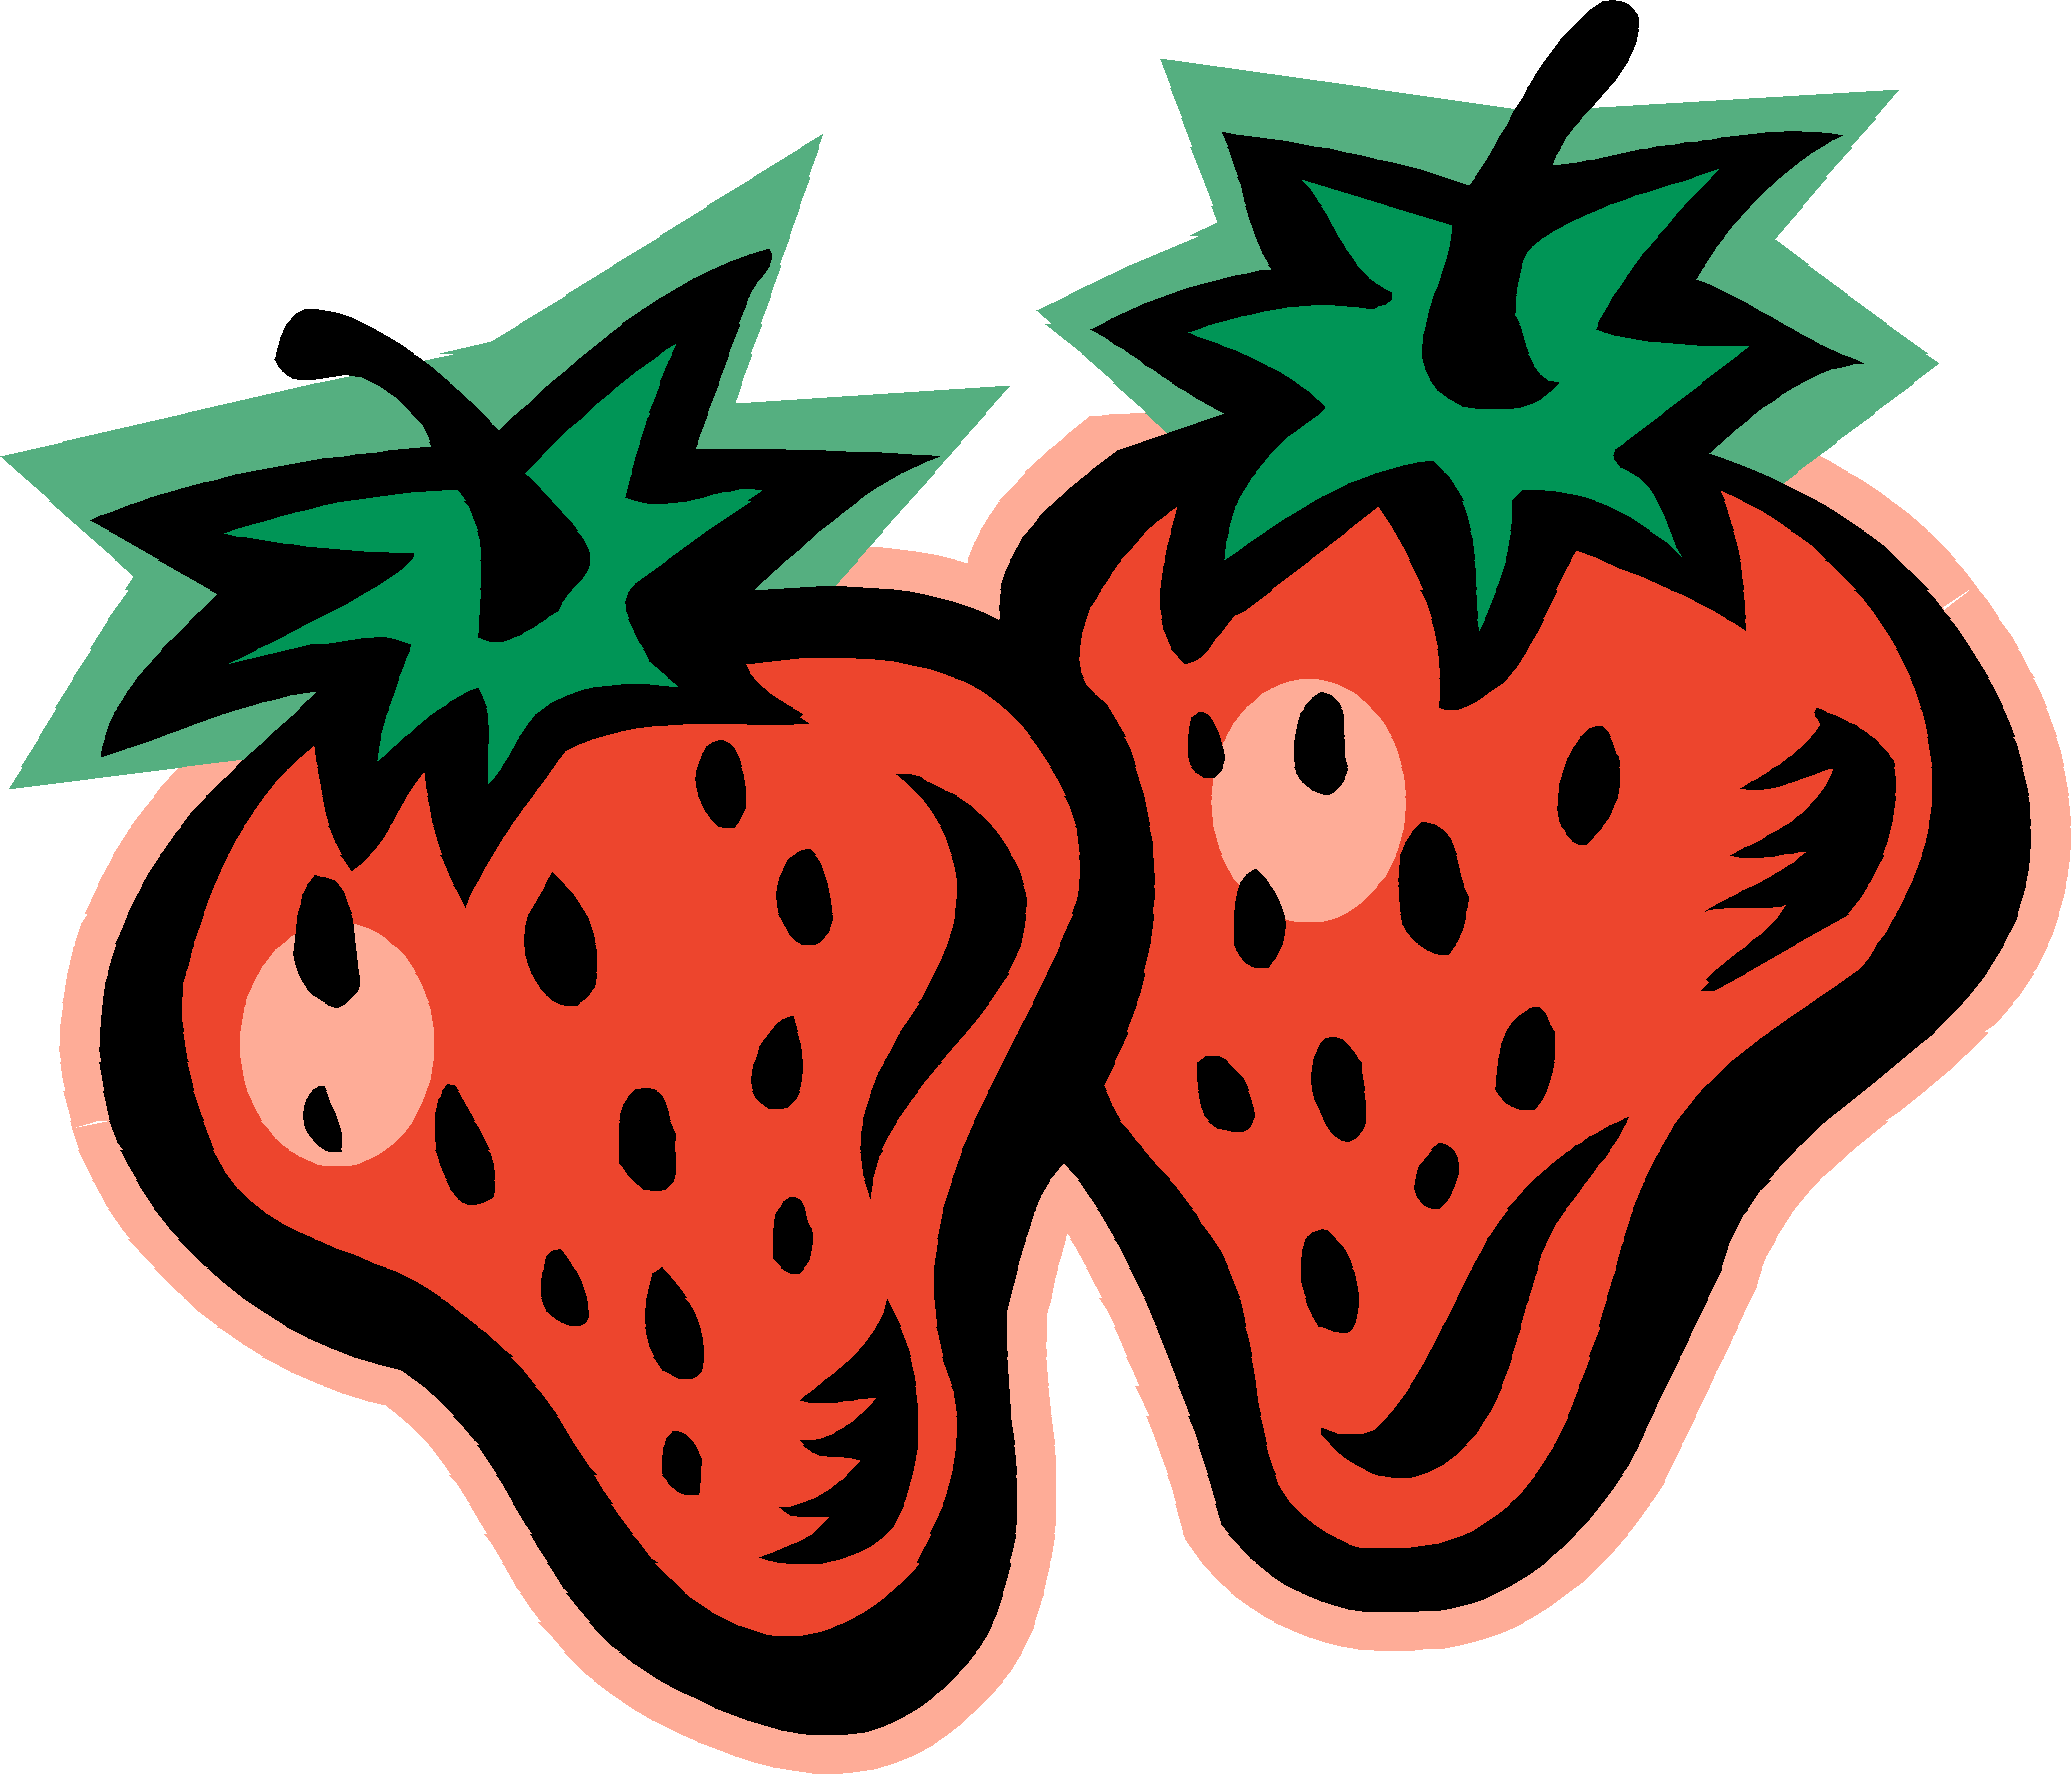 Strawberry clip art clipart 4